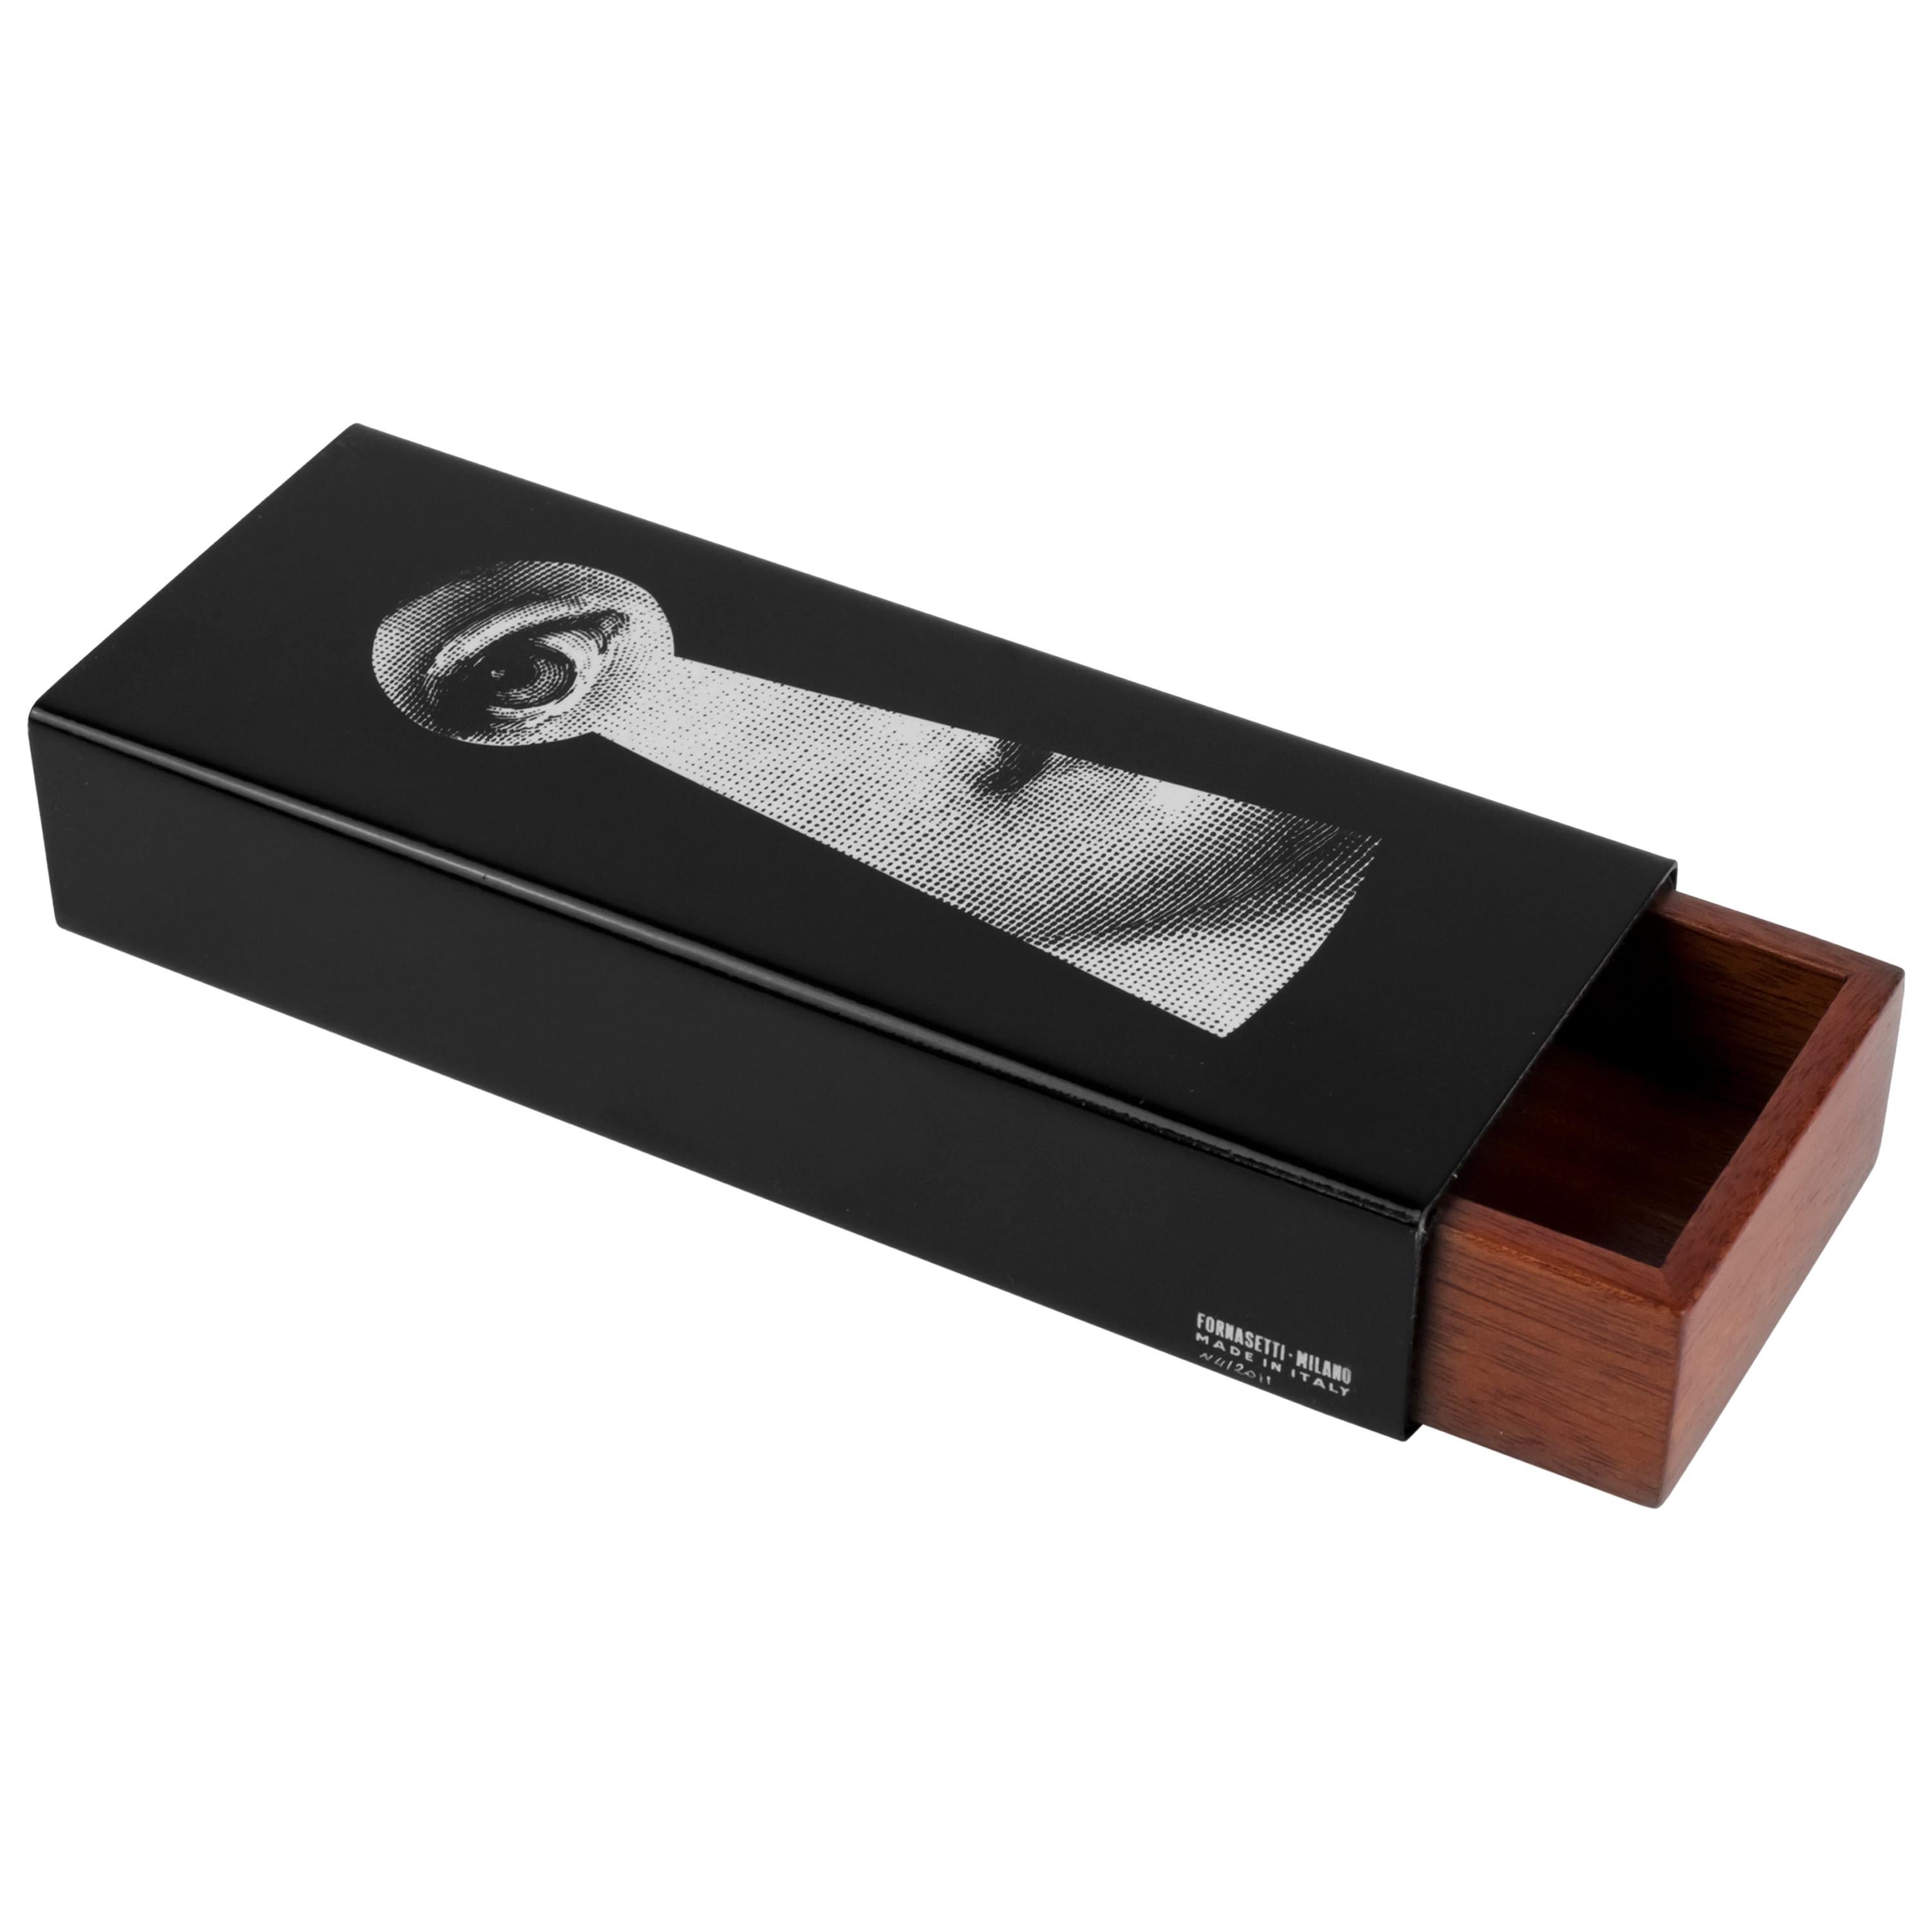 Boîte en bois et métal Serratura noire/blance de Fornasetti